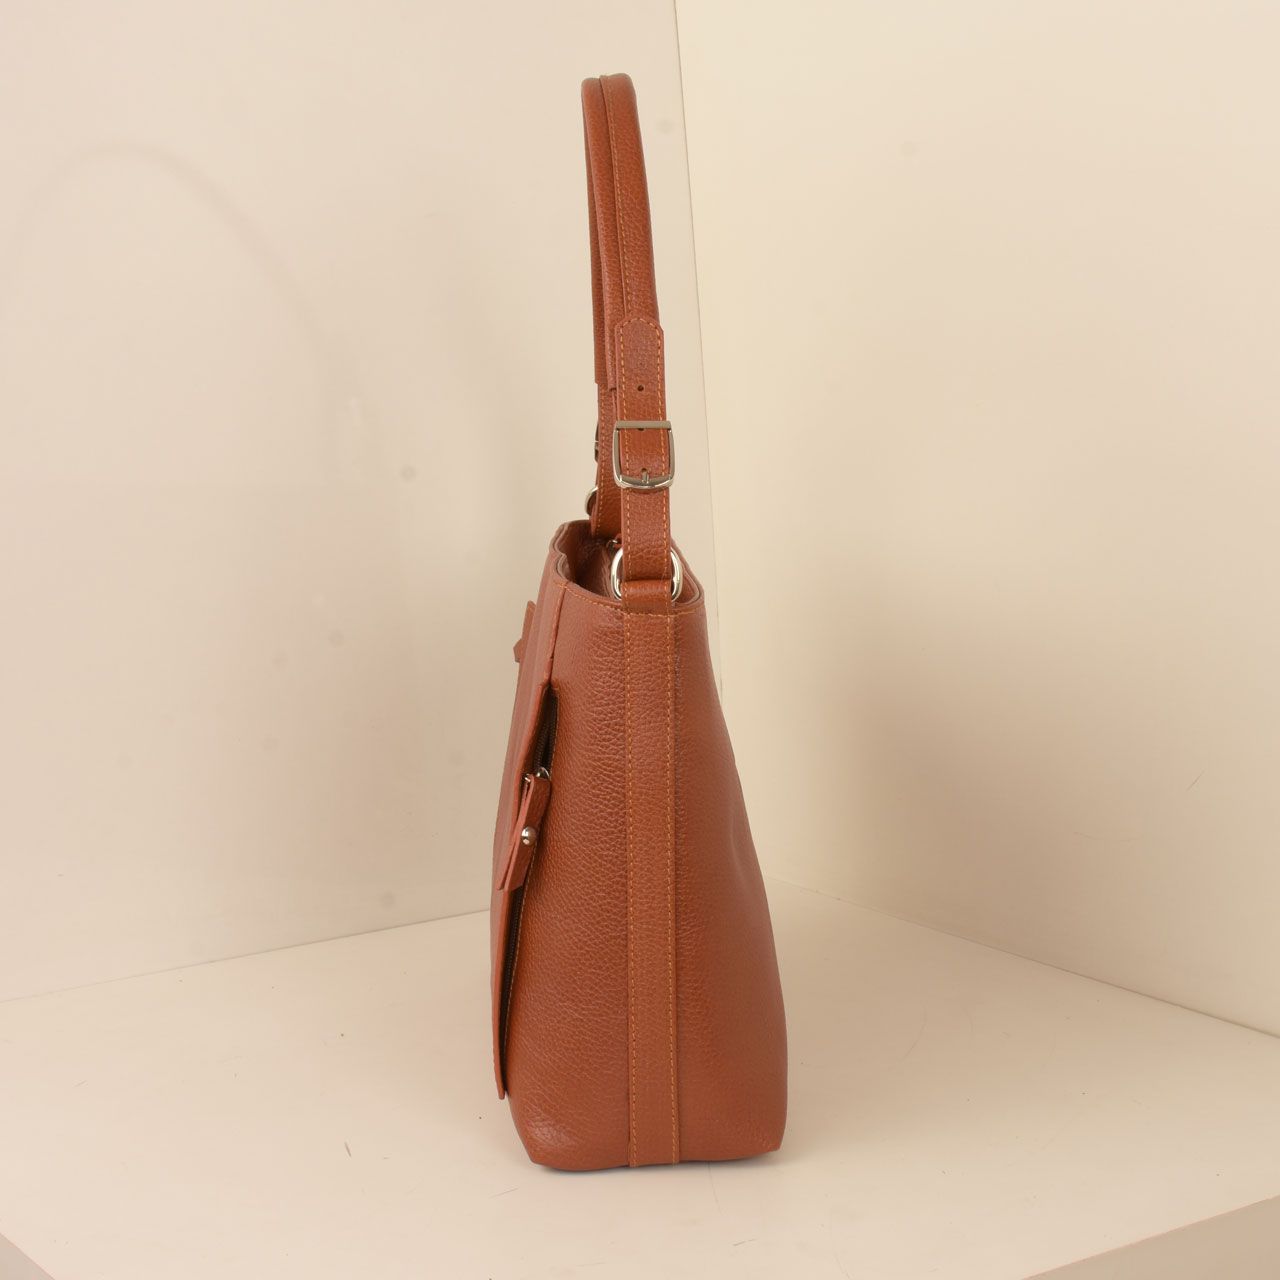  کیف دوشی زنانه پارینه چرم مدل V202-8 -  - 8